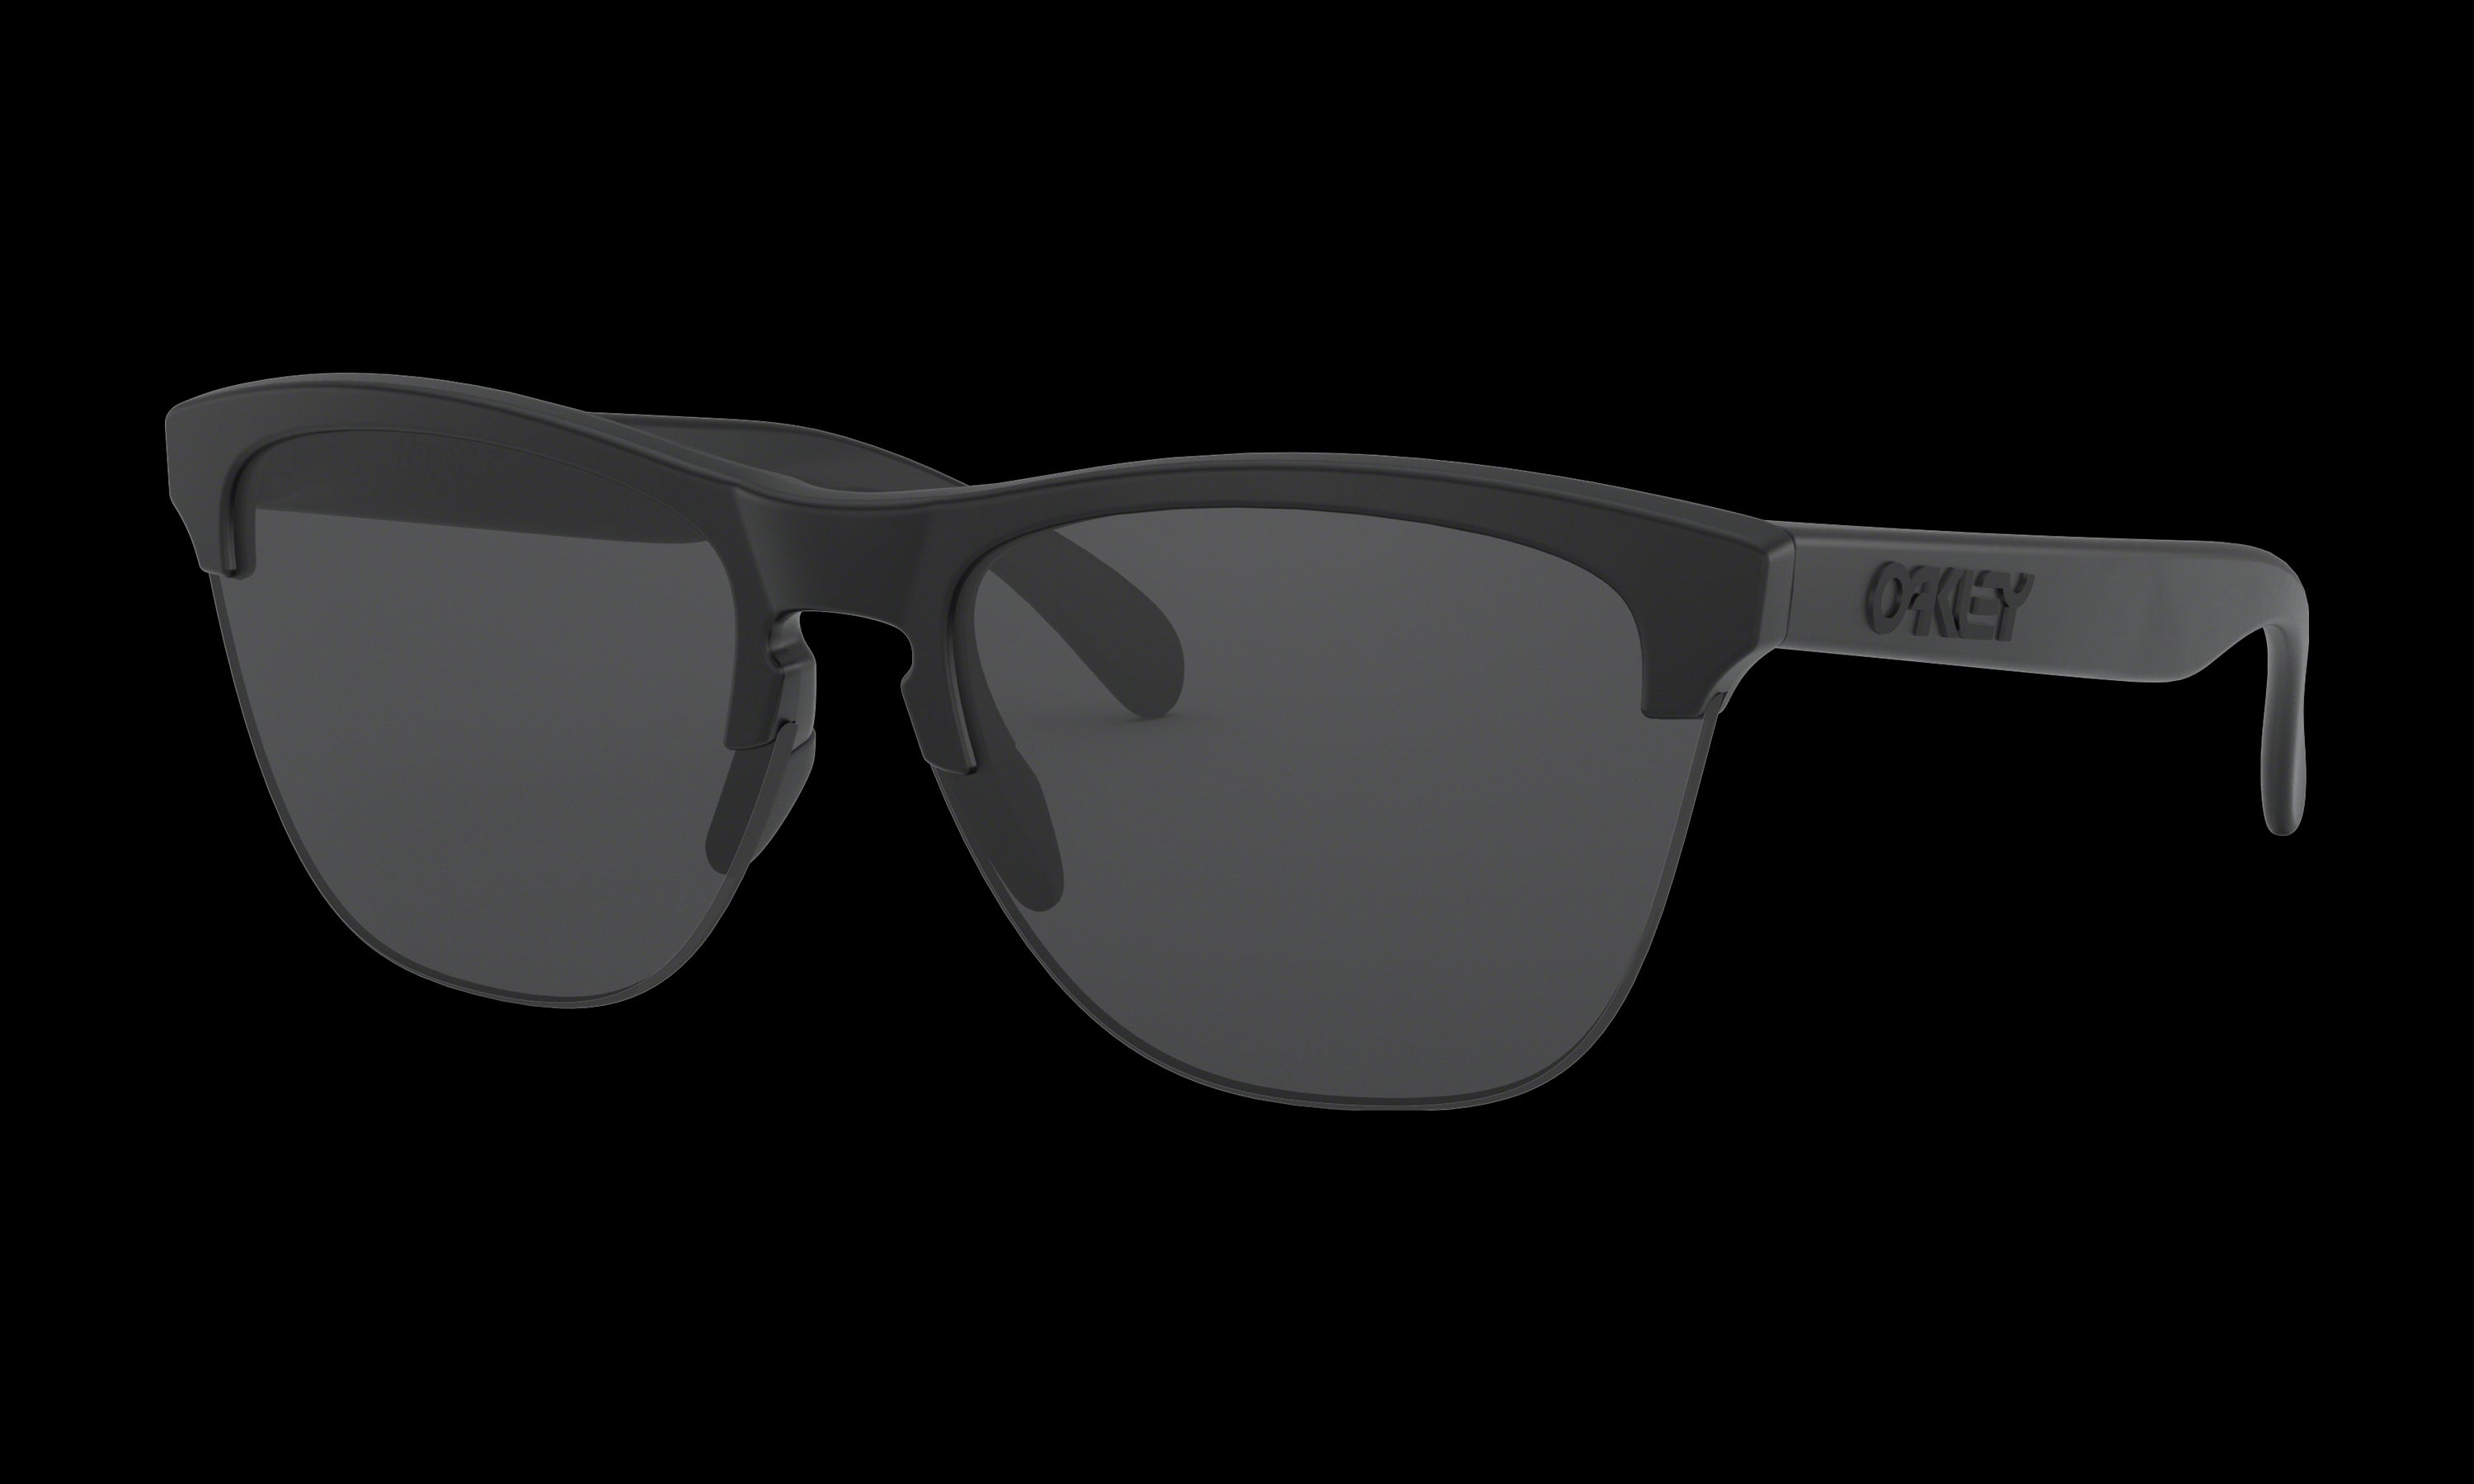 Men's Oakley Frogskins Lite Sunglasses in Matte Black Grey